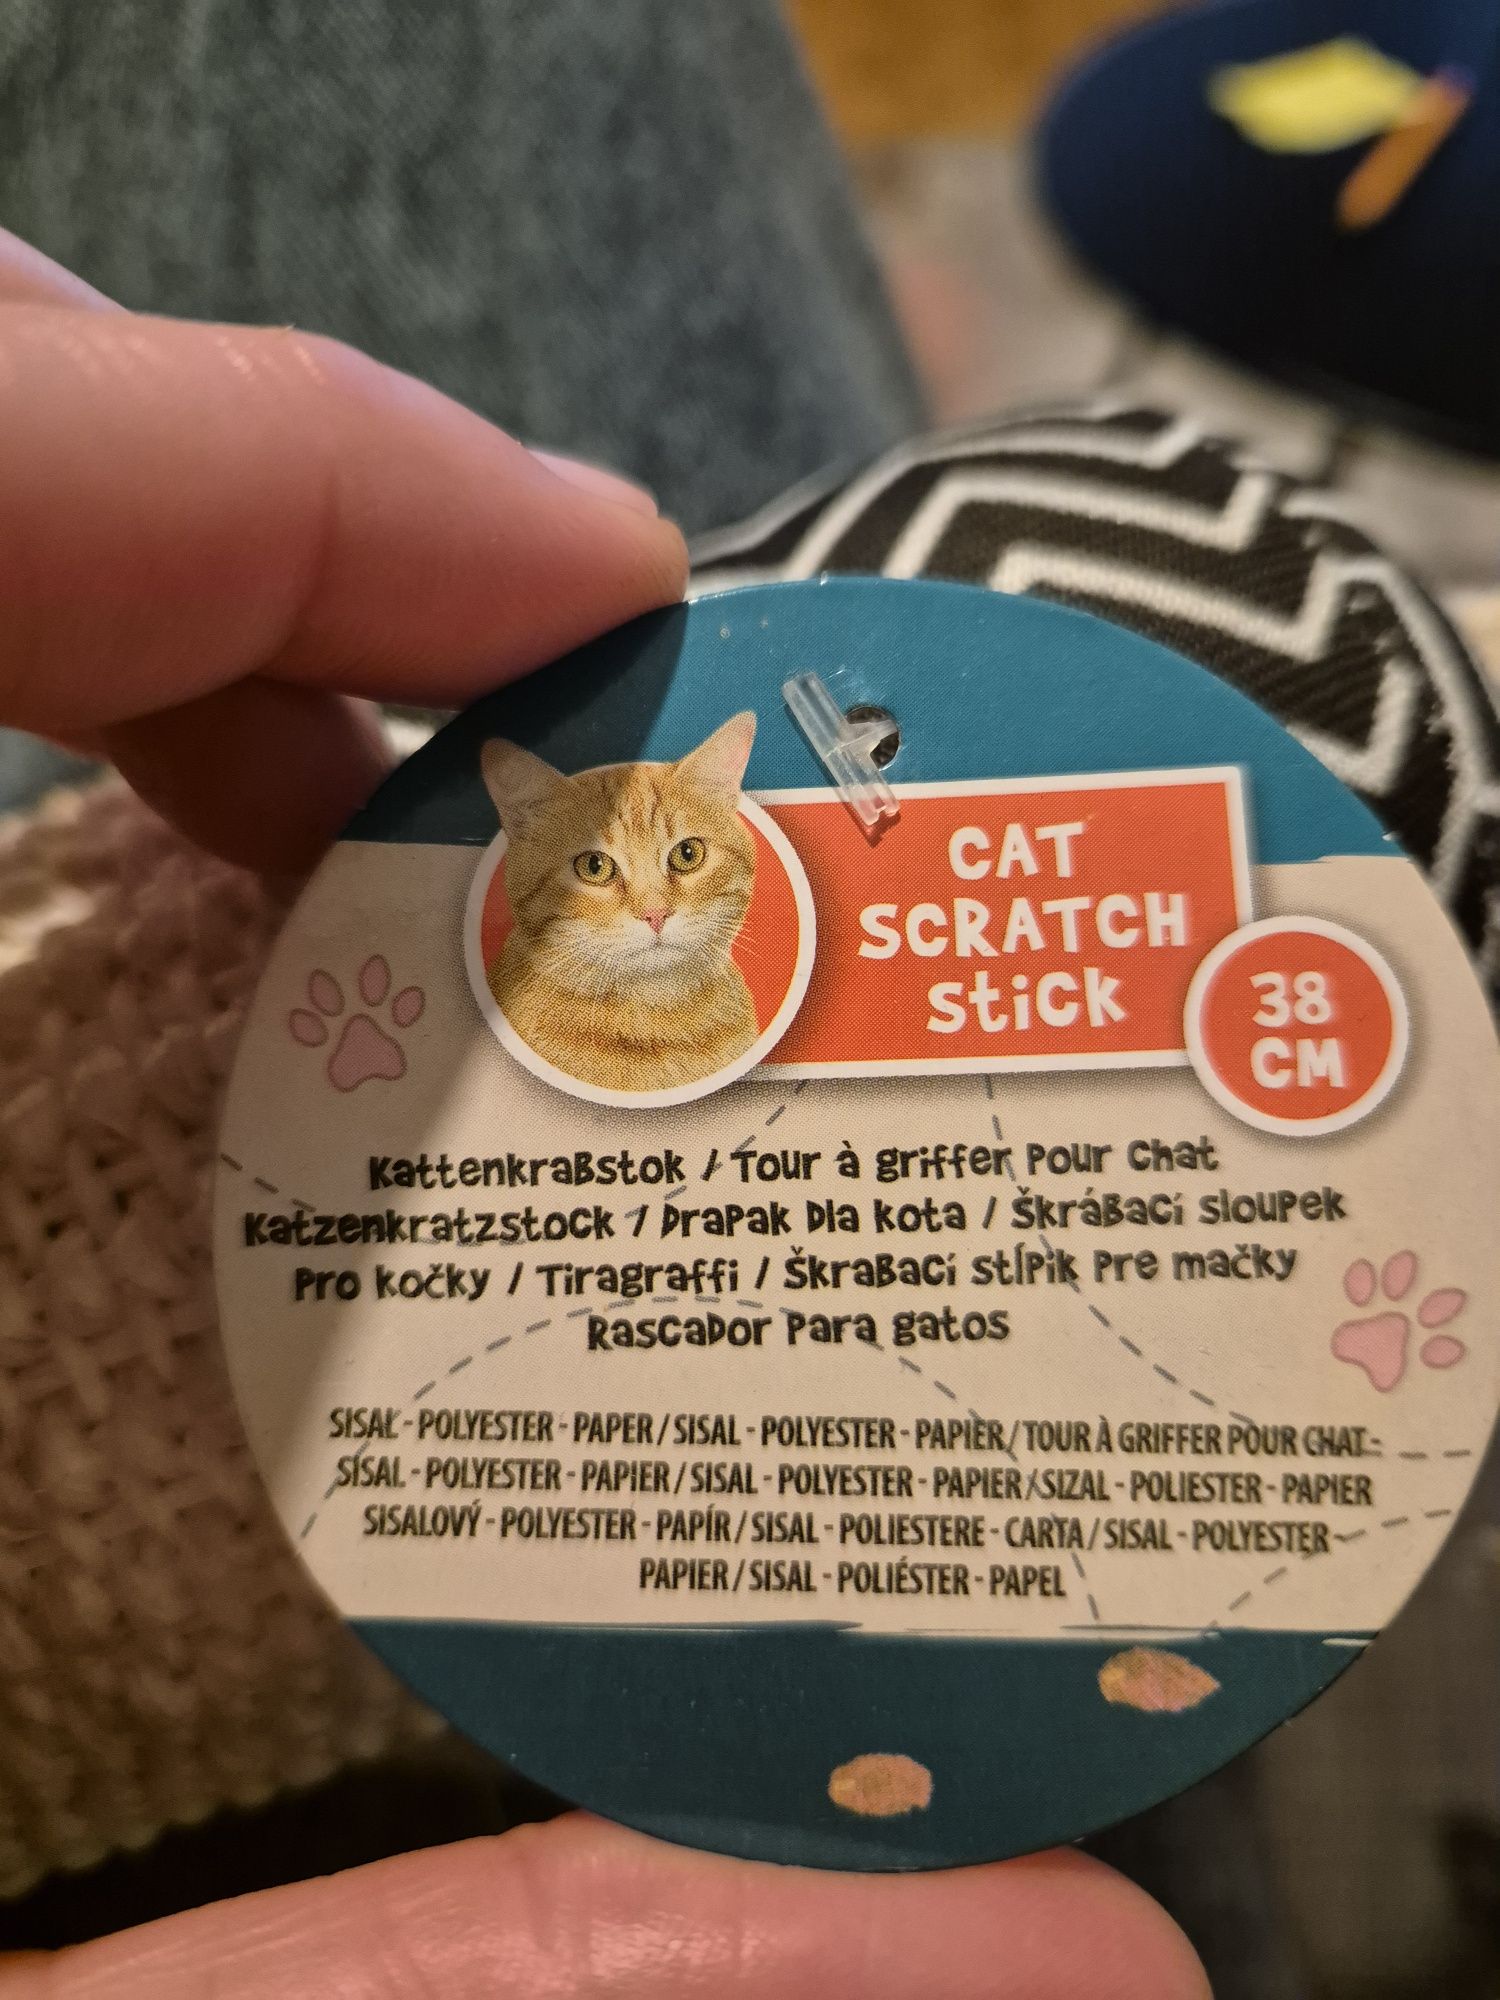 Drapak dla kota z piłeczką